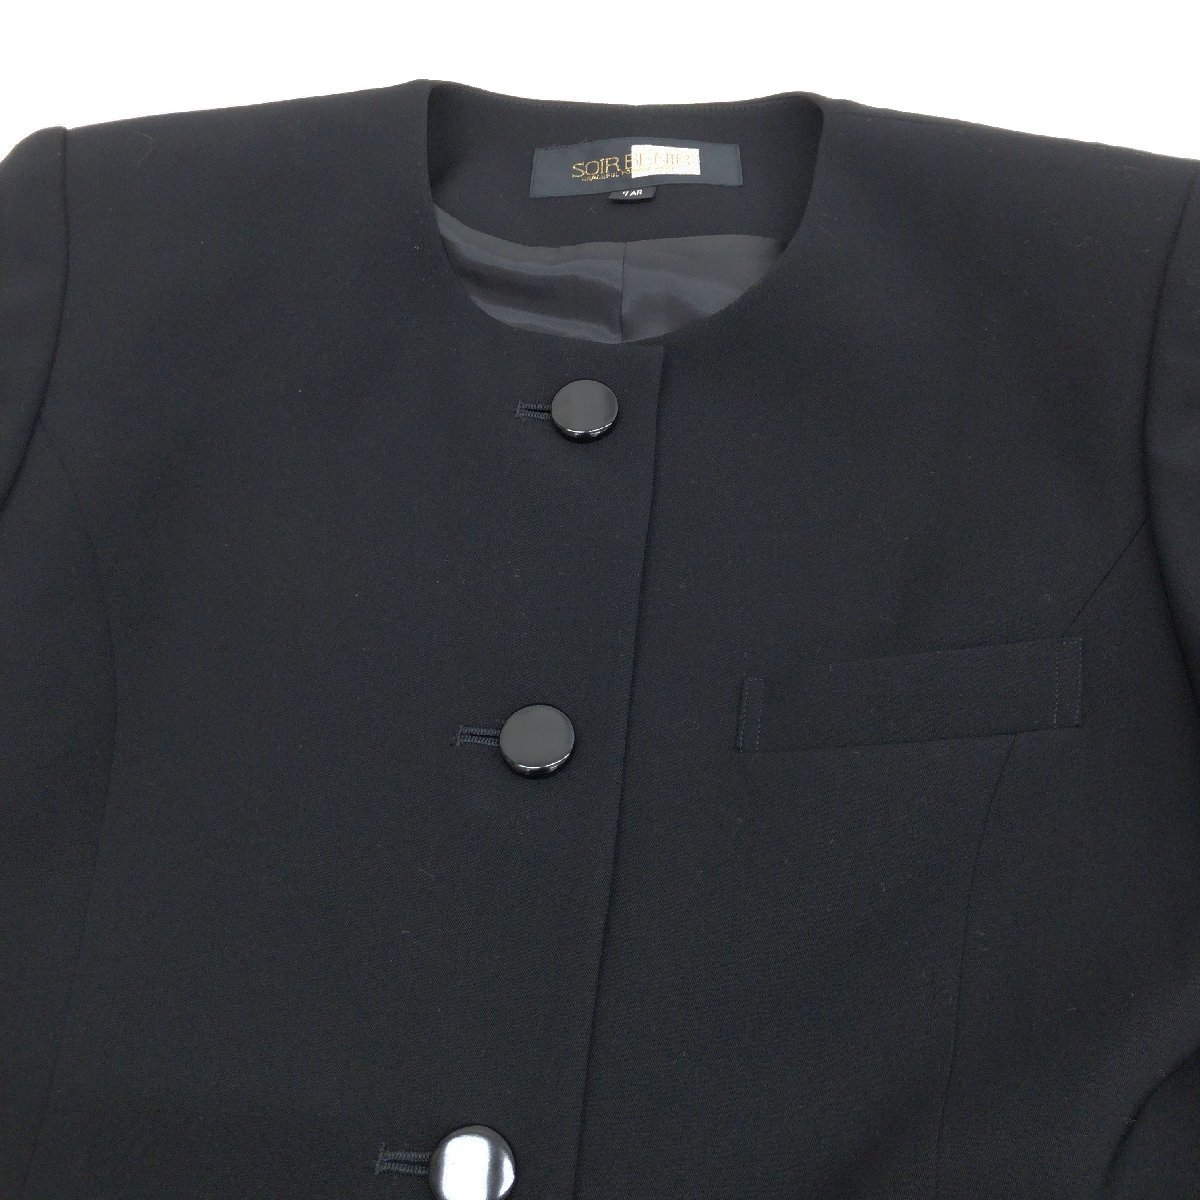 ●SOUR BENIR 東京ソワール スカート スーツ 上下セットアップ 3点セット 7AR(S相当) 黒 日本製 ジャケット 喪服 礼服 ブラックフォーマル_画像5